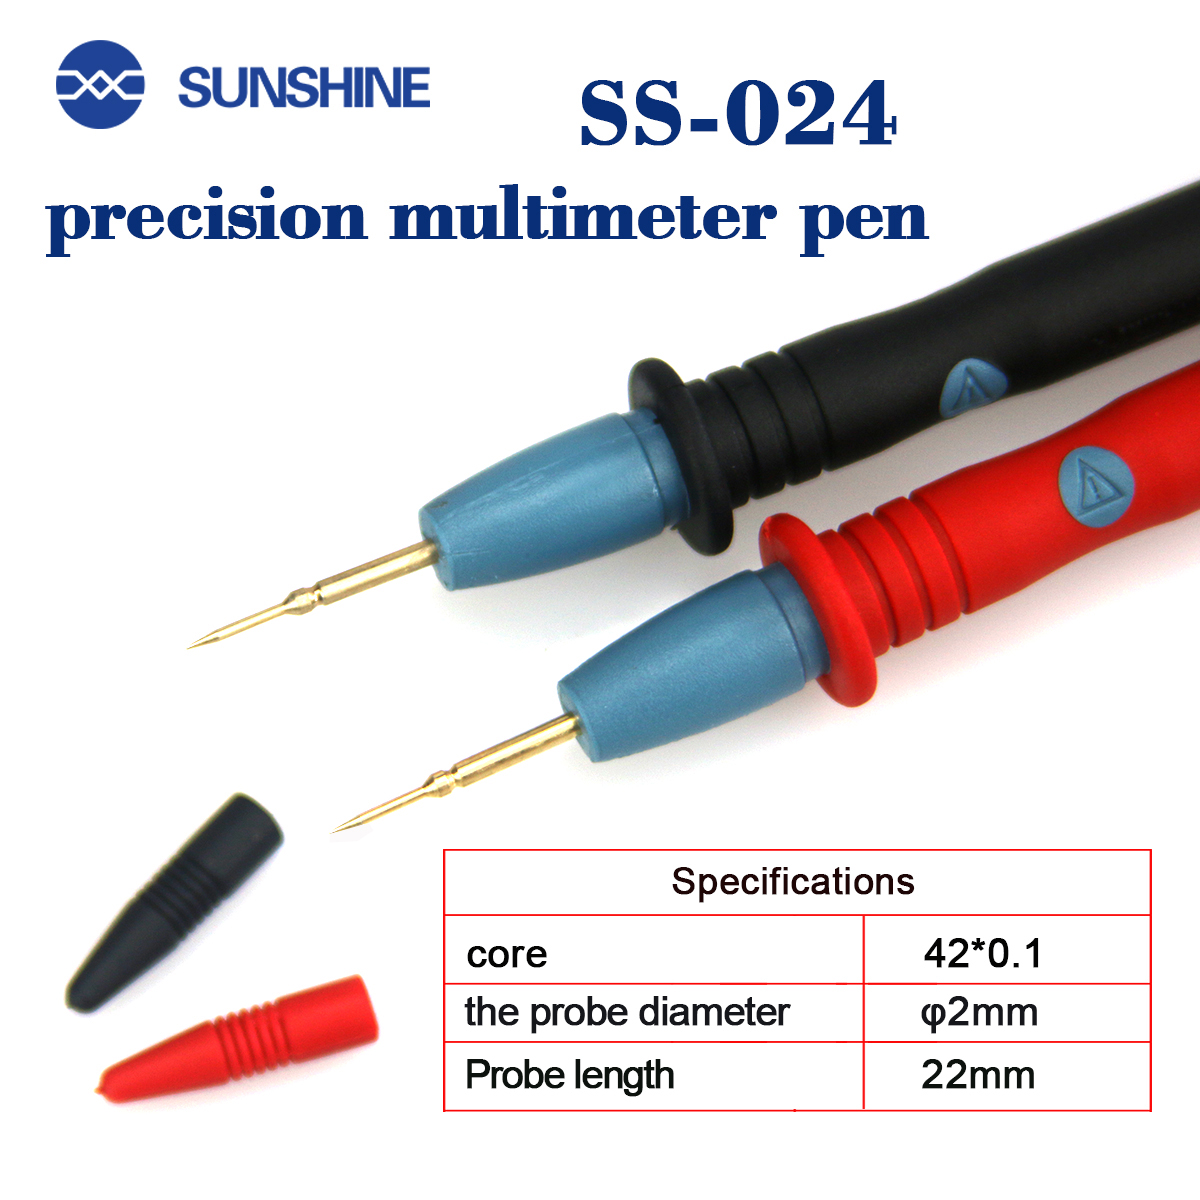 SUNSHINE SS-024 Multimeter Pen sunshine SS-024 Multimeter Pen